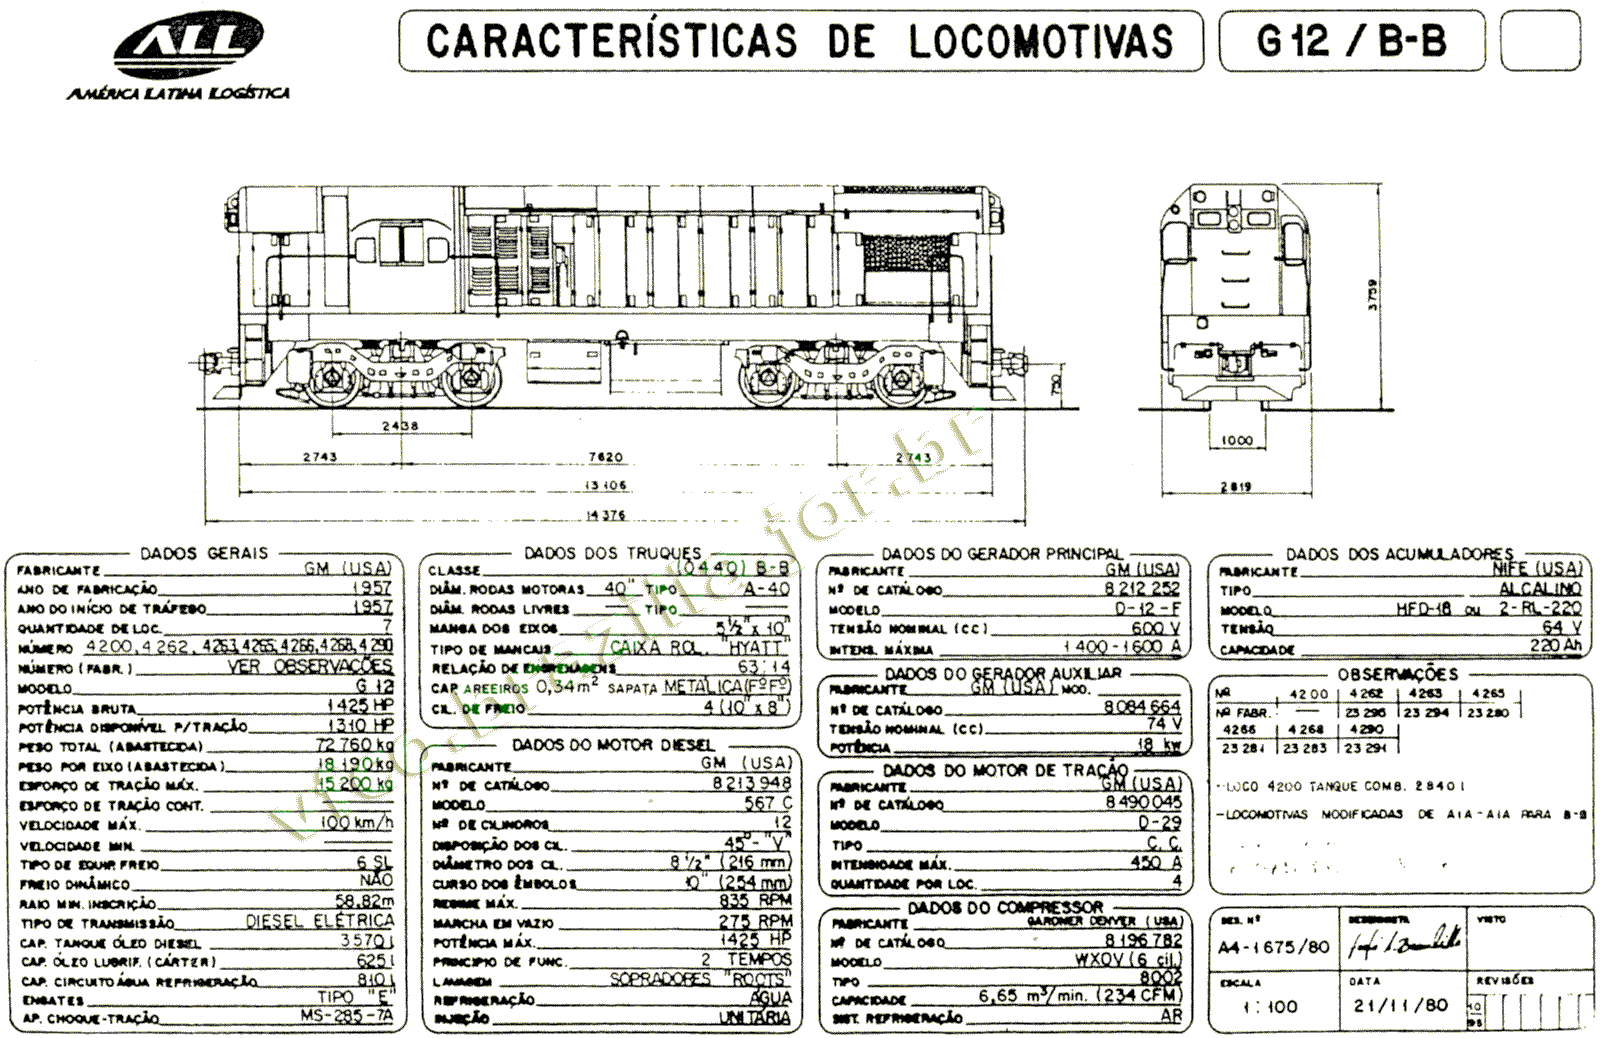 Medidas e especificações das Locomotivas G12 nº 4200-4290 da ferrovia ALL